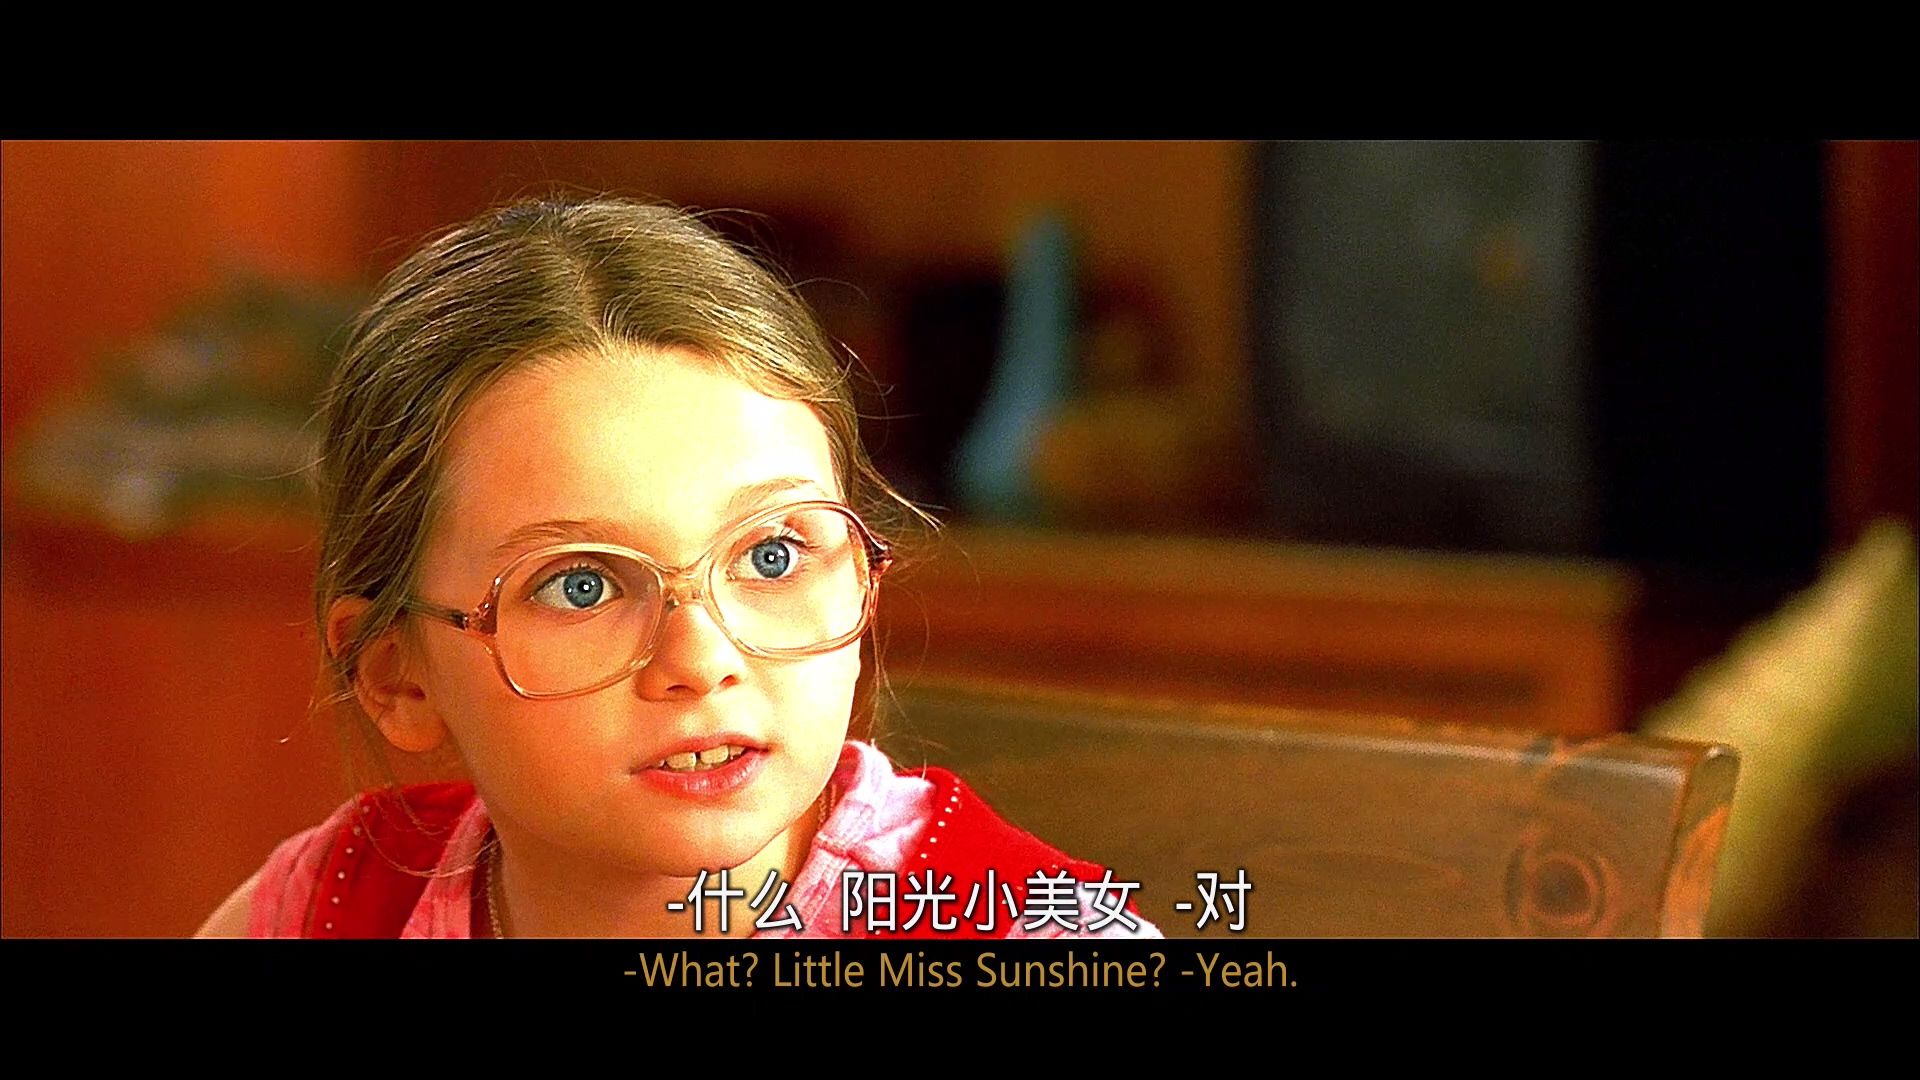 阳光小美女 [DIY上译/央视长影双国语+简繁R3双语简体.上译国配简体+菜单修改] Little Miss Sunshine 2006 1080p CEE Blu-ray AVC DTS-HD MA 5.1 DIY-Chinagear@HDSky    [35.27 GB ]-9.jpg